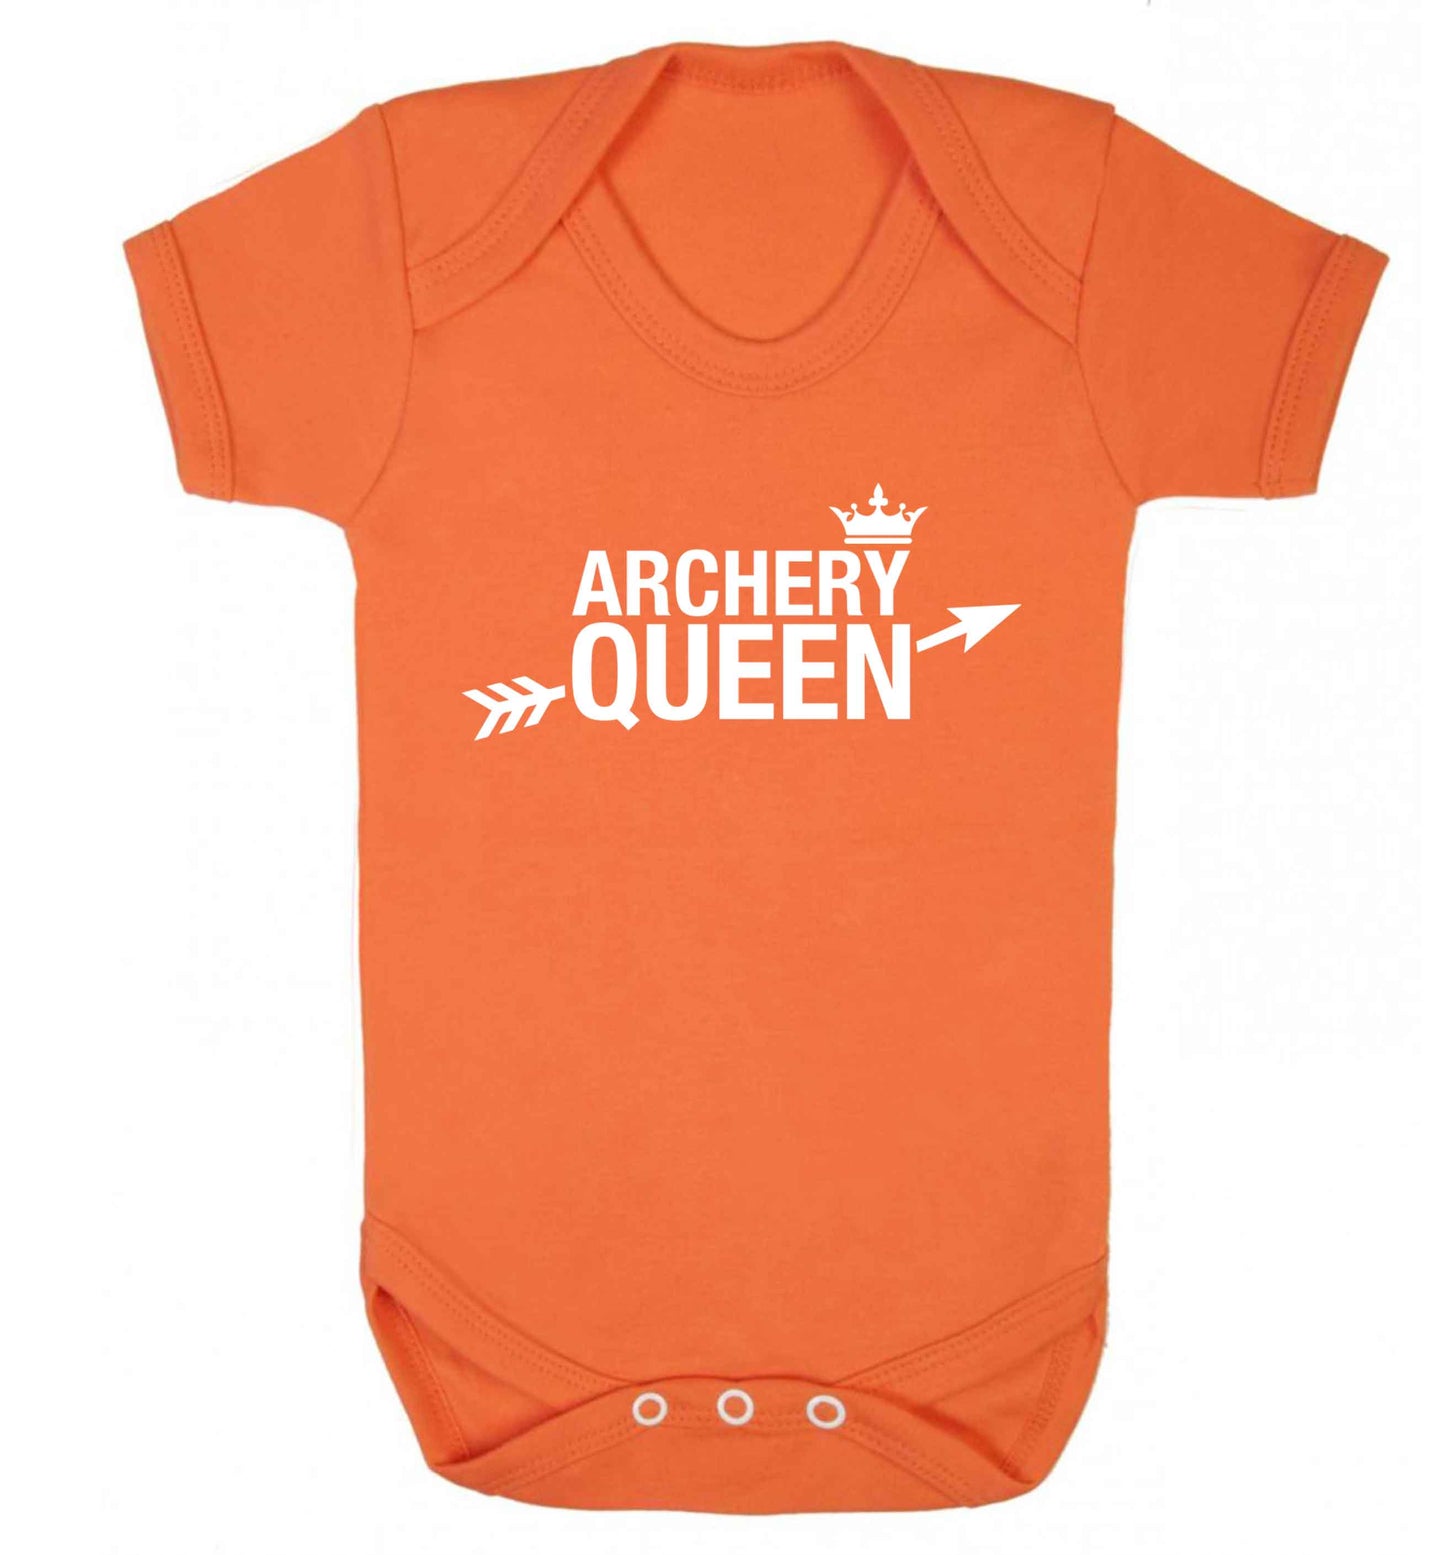 Archery queen Baby Vest orange 18-24 months